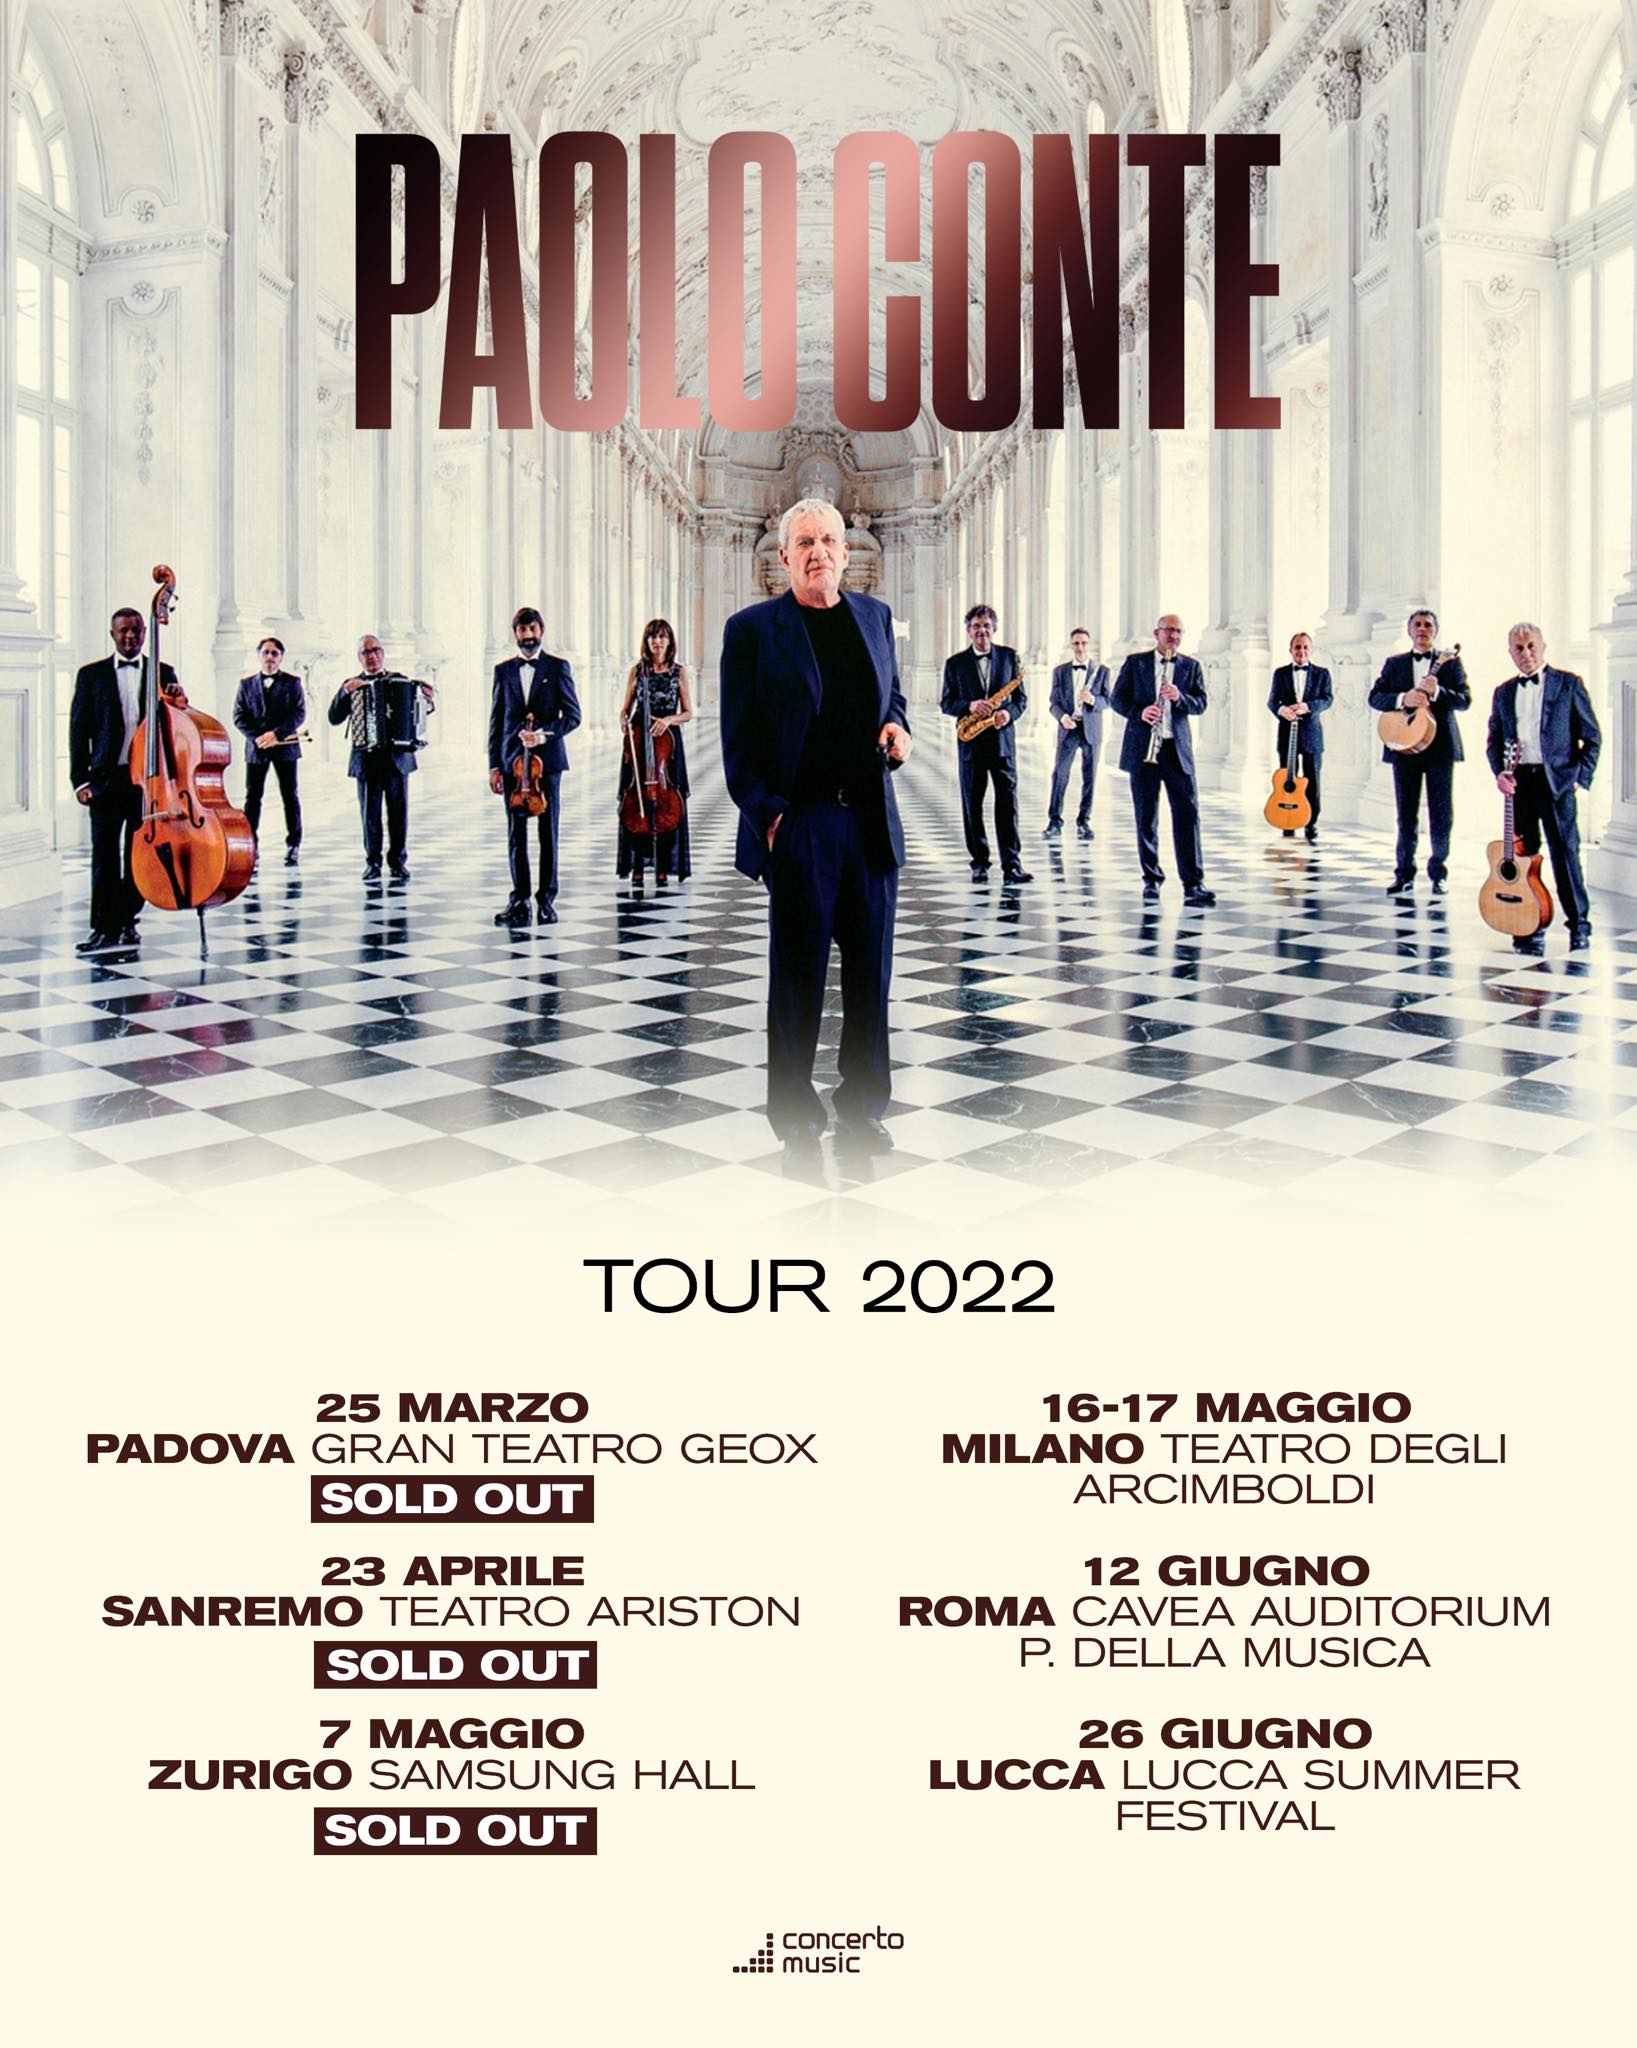 paolo conte tour 2022